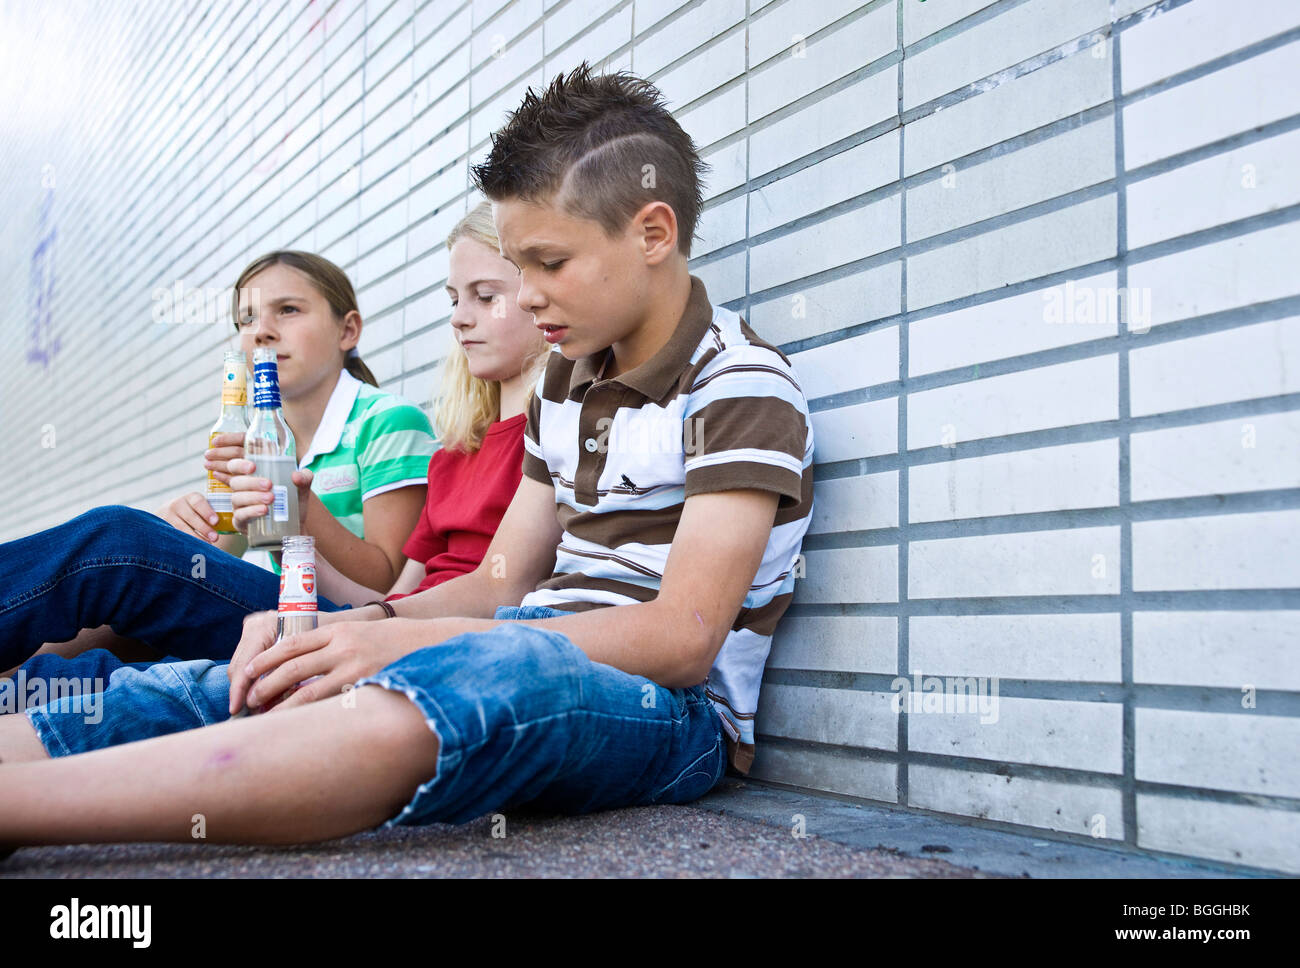 Trois enfants assis sur le sol et la tenue de bouteilles d'alcool, low angle view Banque D'Images